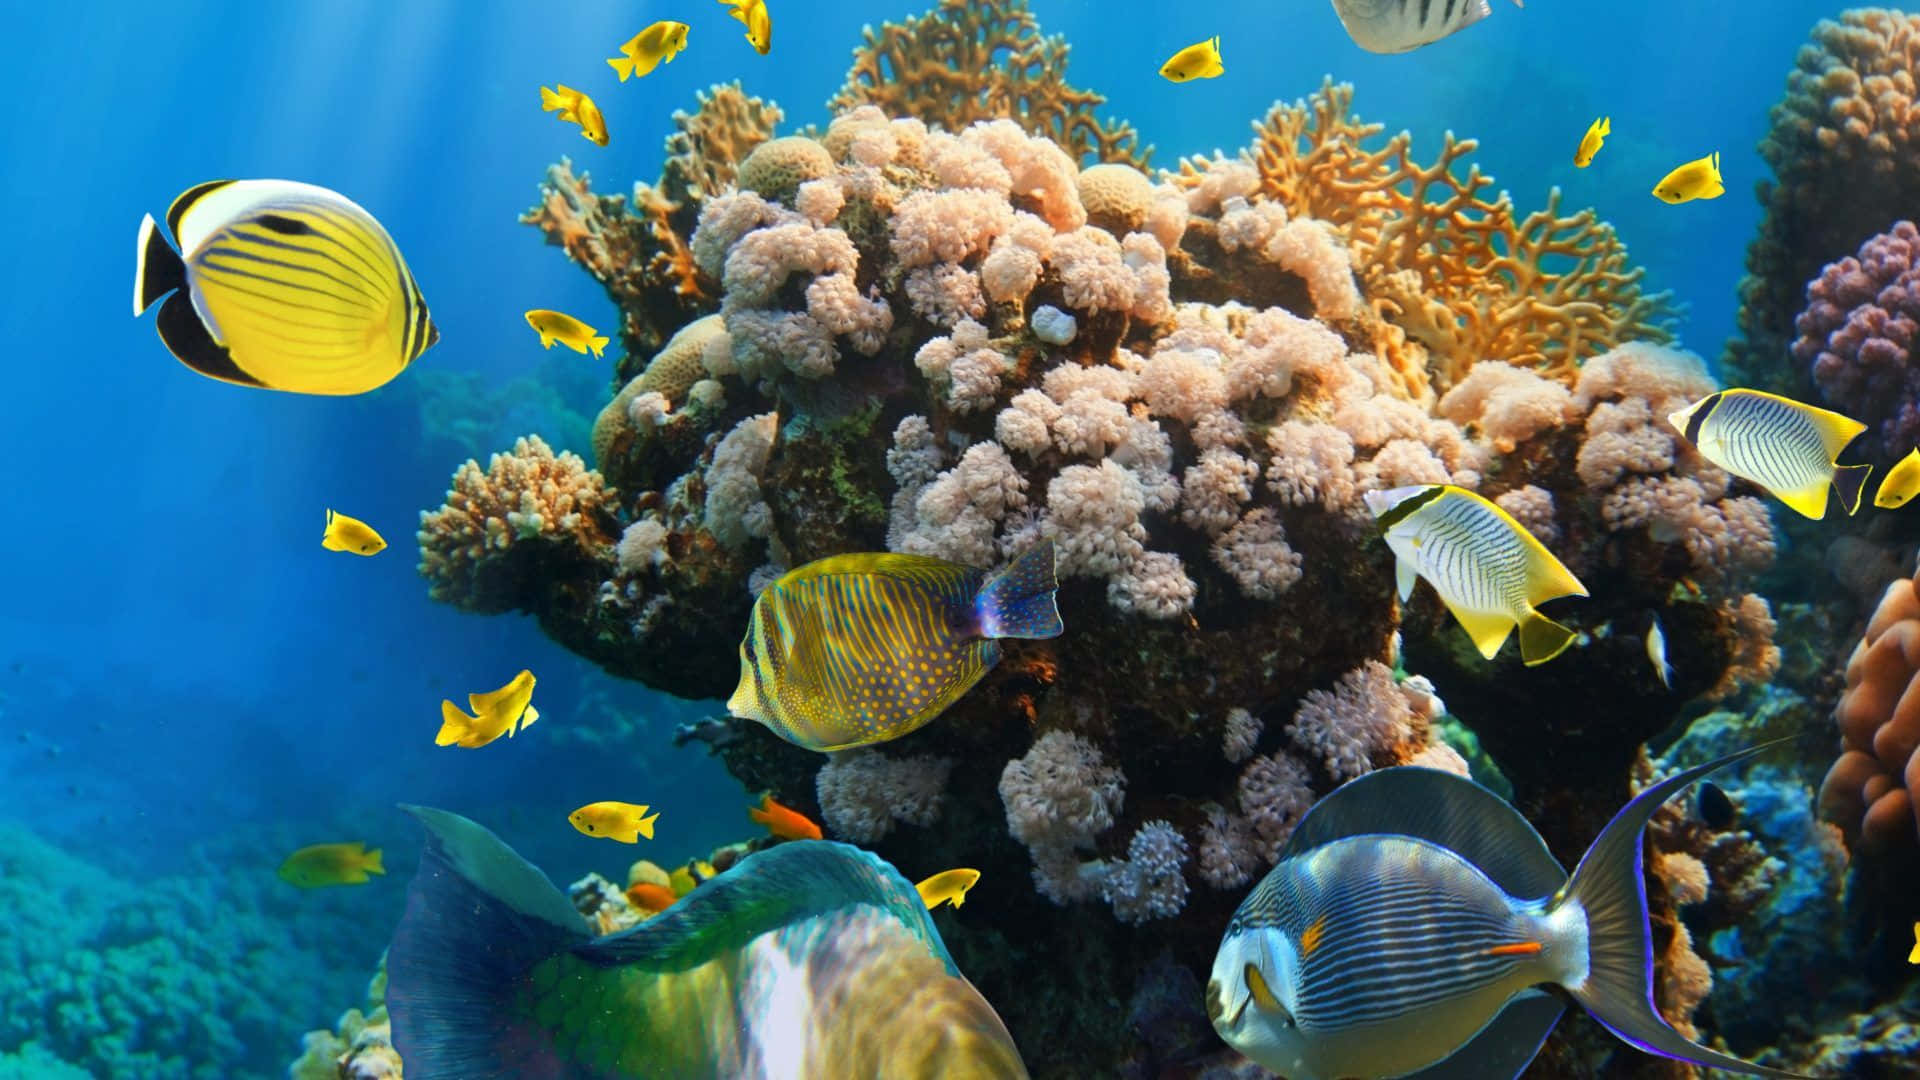 Impresionanteformación De Arrecife De Coral Vibrante.